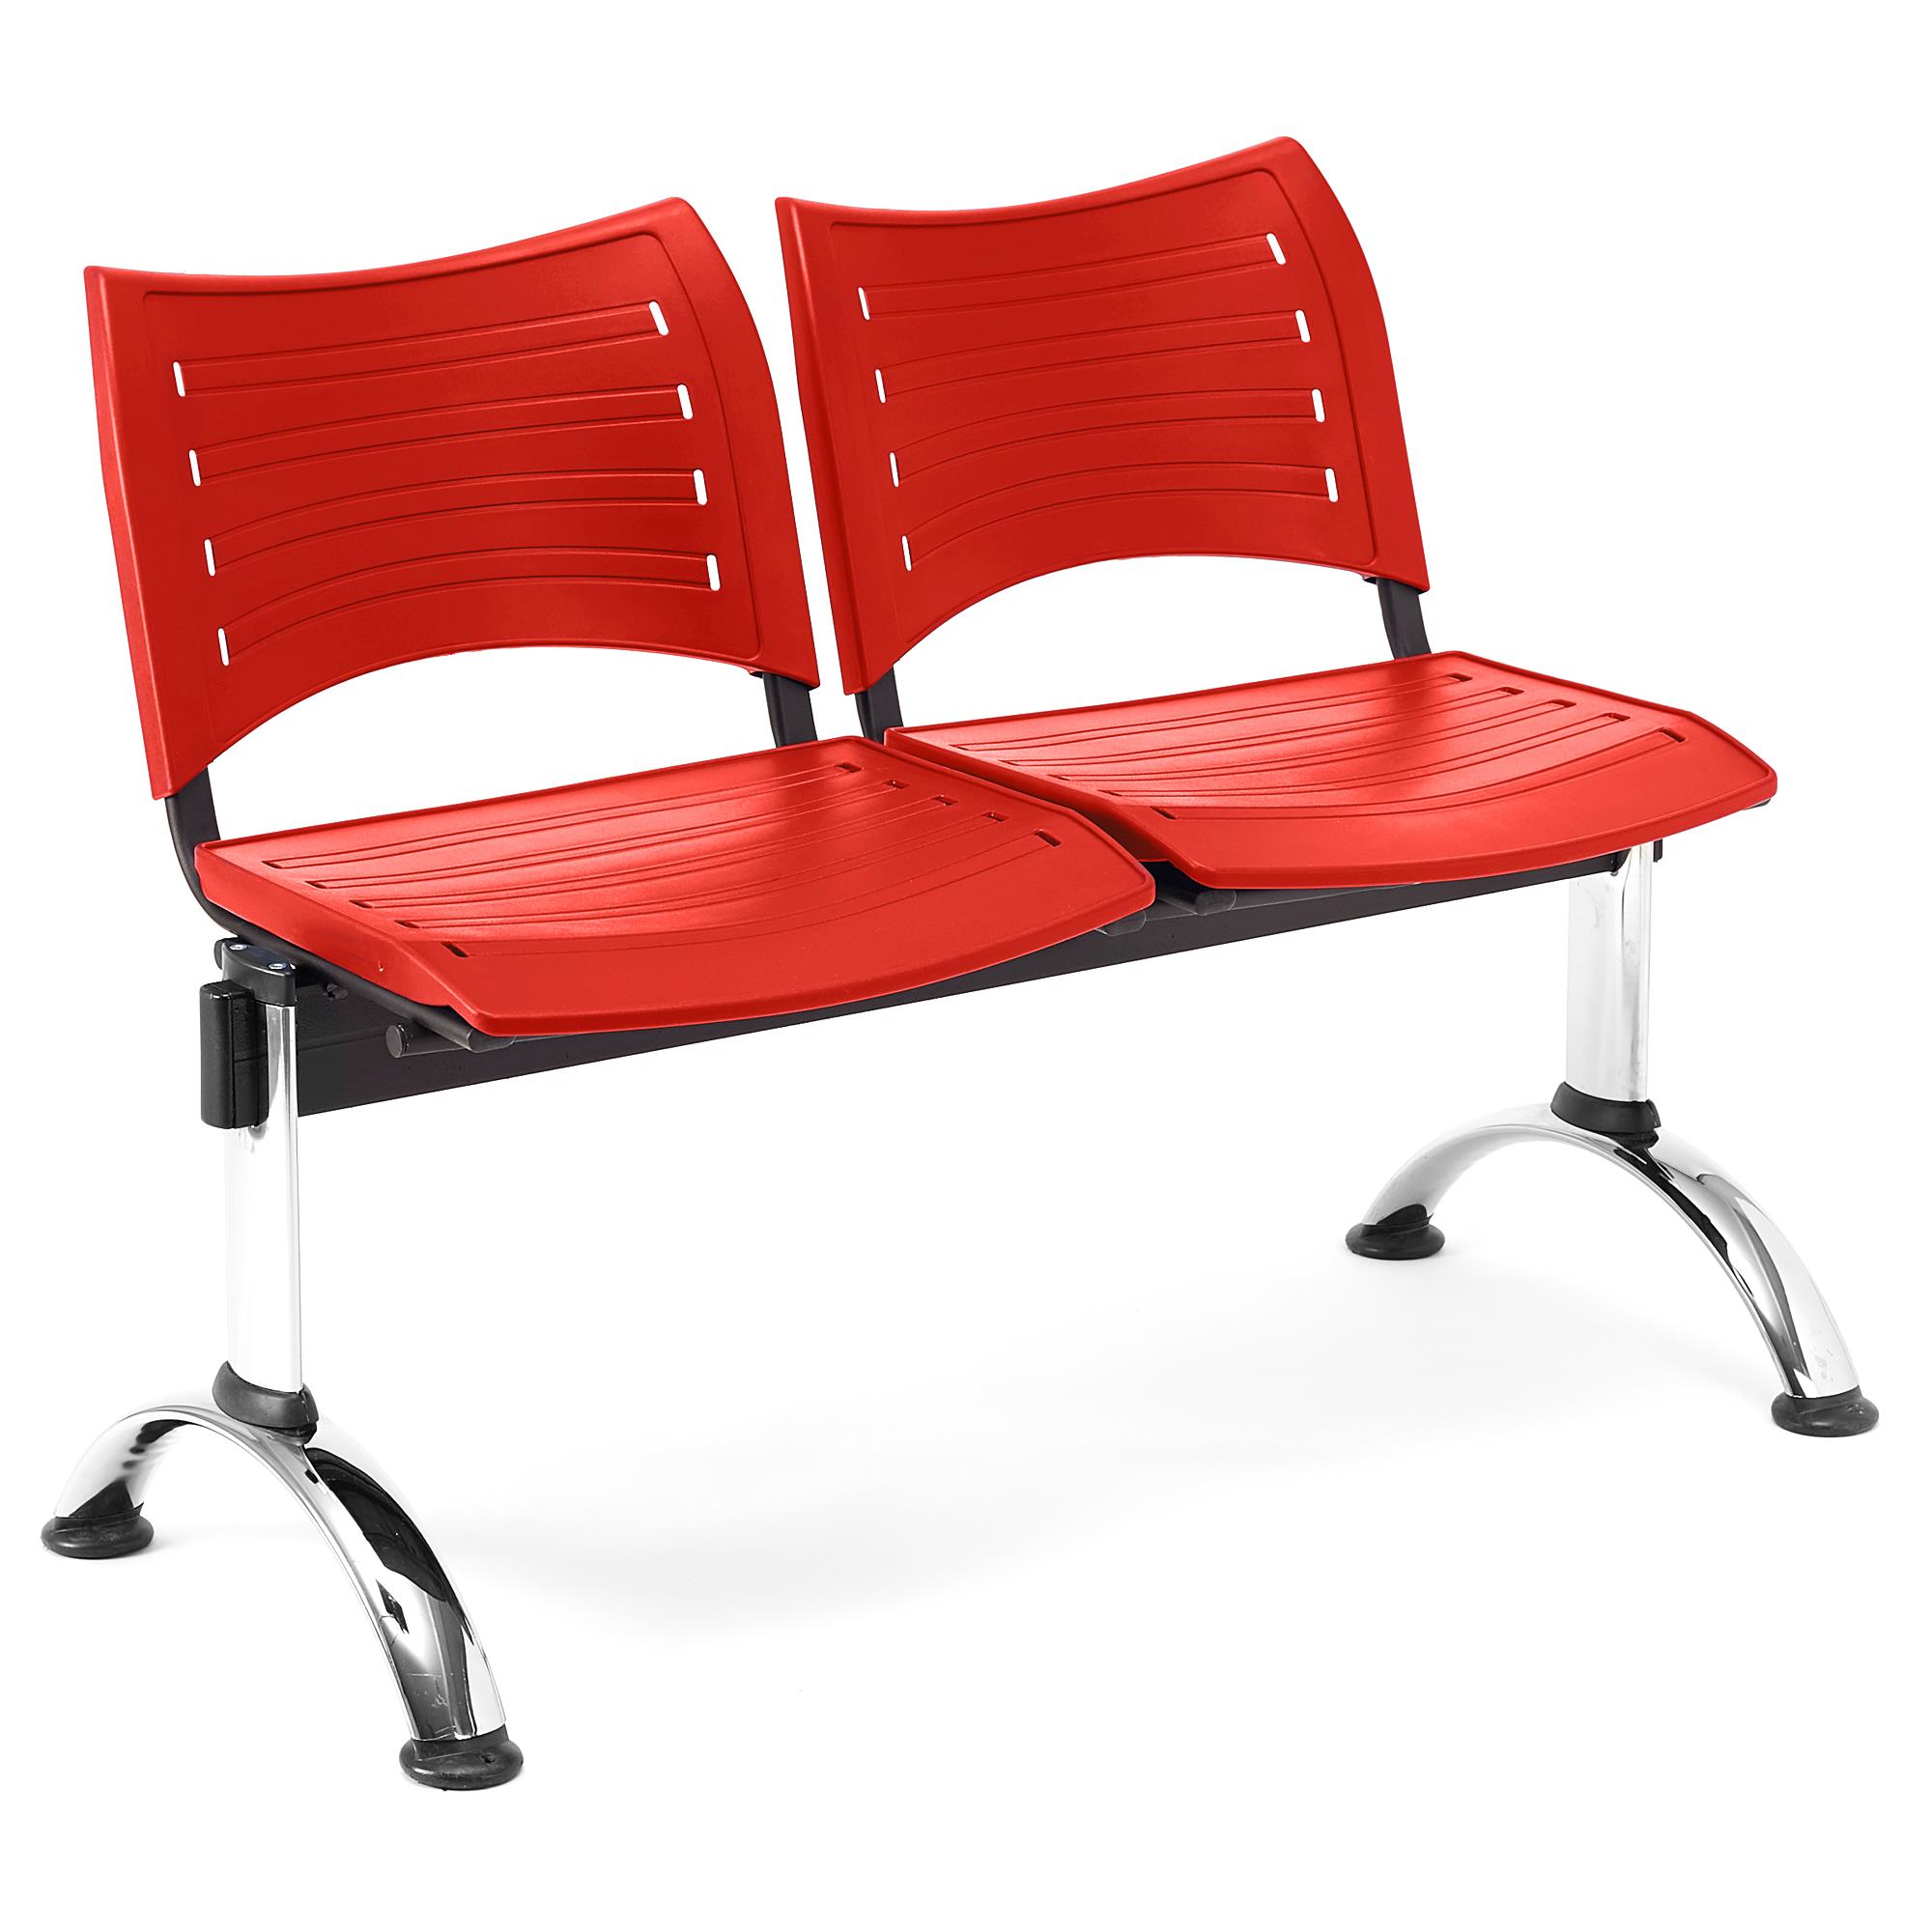 Wartebank ELVA 2-Sitzer, Metallgestell, Kunststoff, Farbe Rot